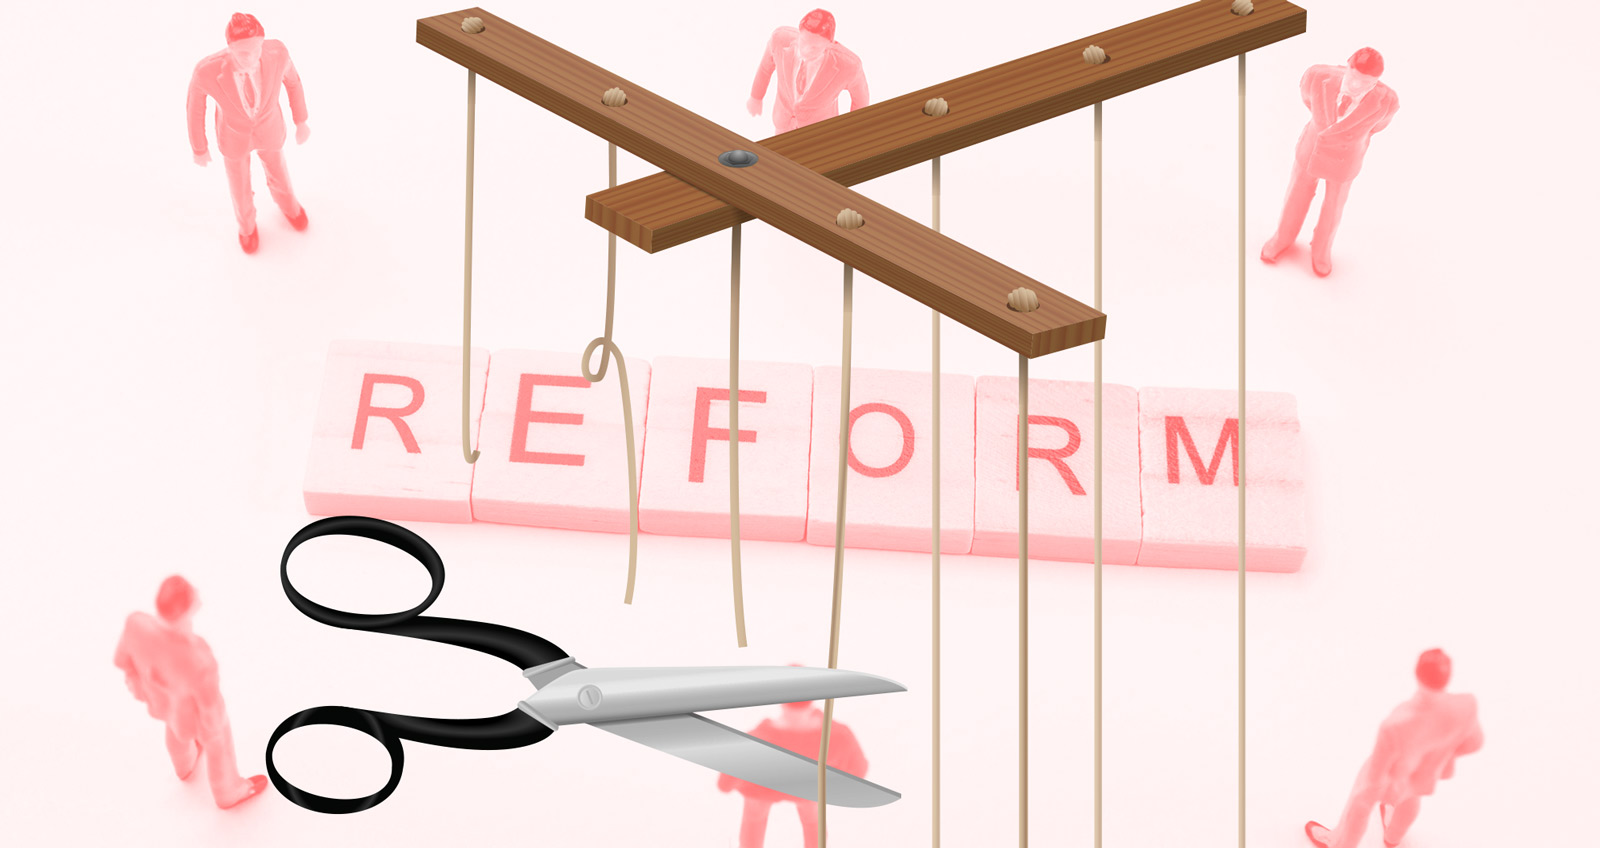 Im Hintergrund aus Scrabble-Steinen das Wort "Reform" gelegt, darum stehen nachdenkliche Menschen, im Vordergrund schneidet eine Schere die Fäden einer Marionette durch